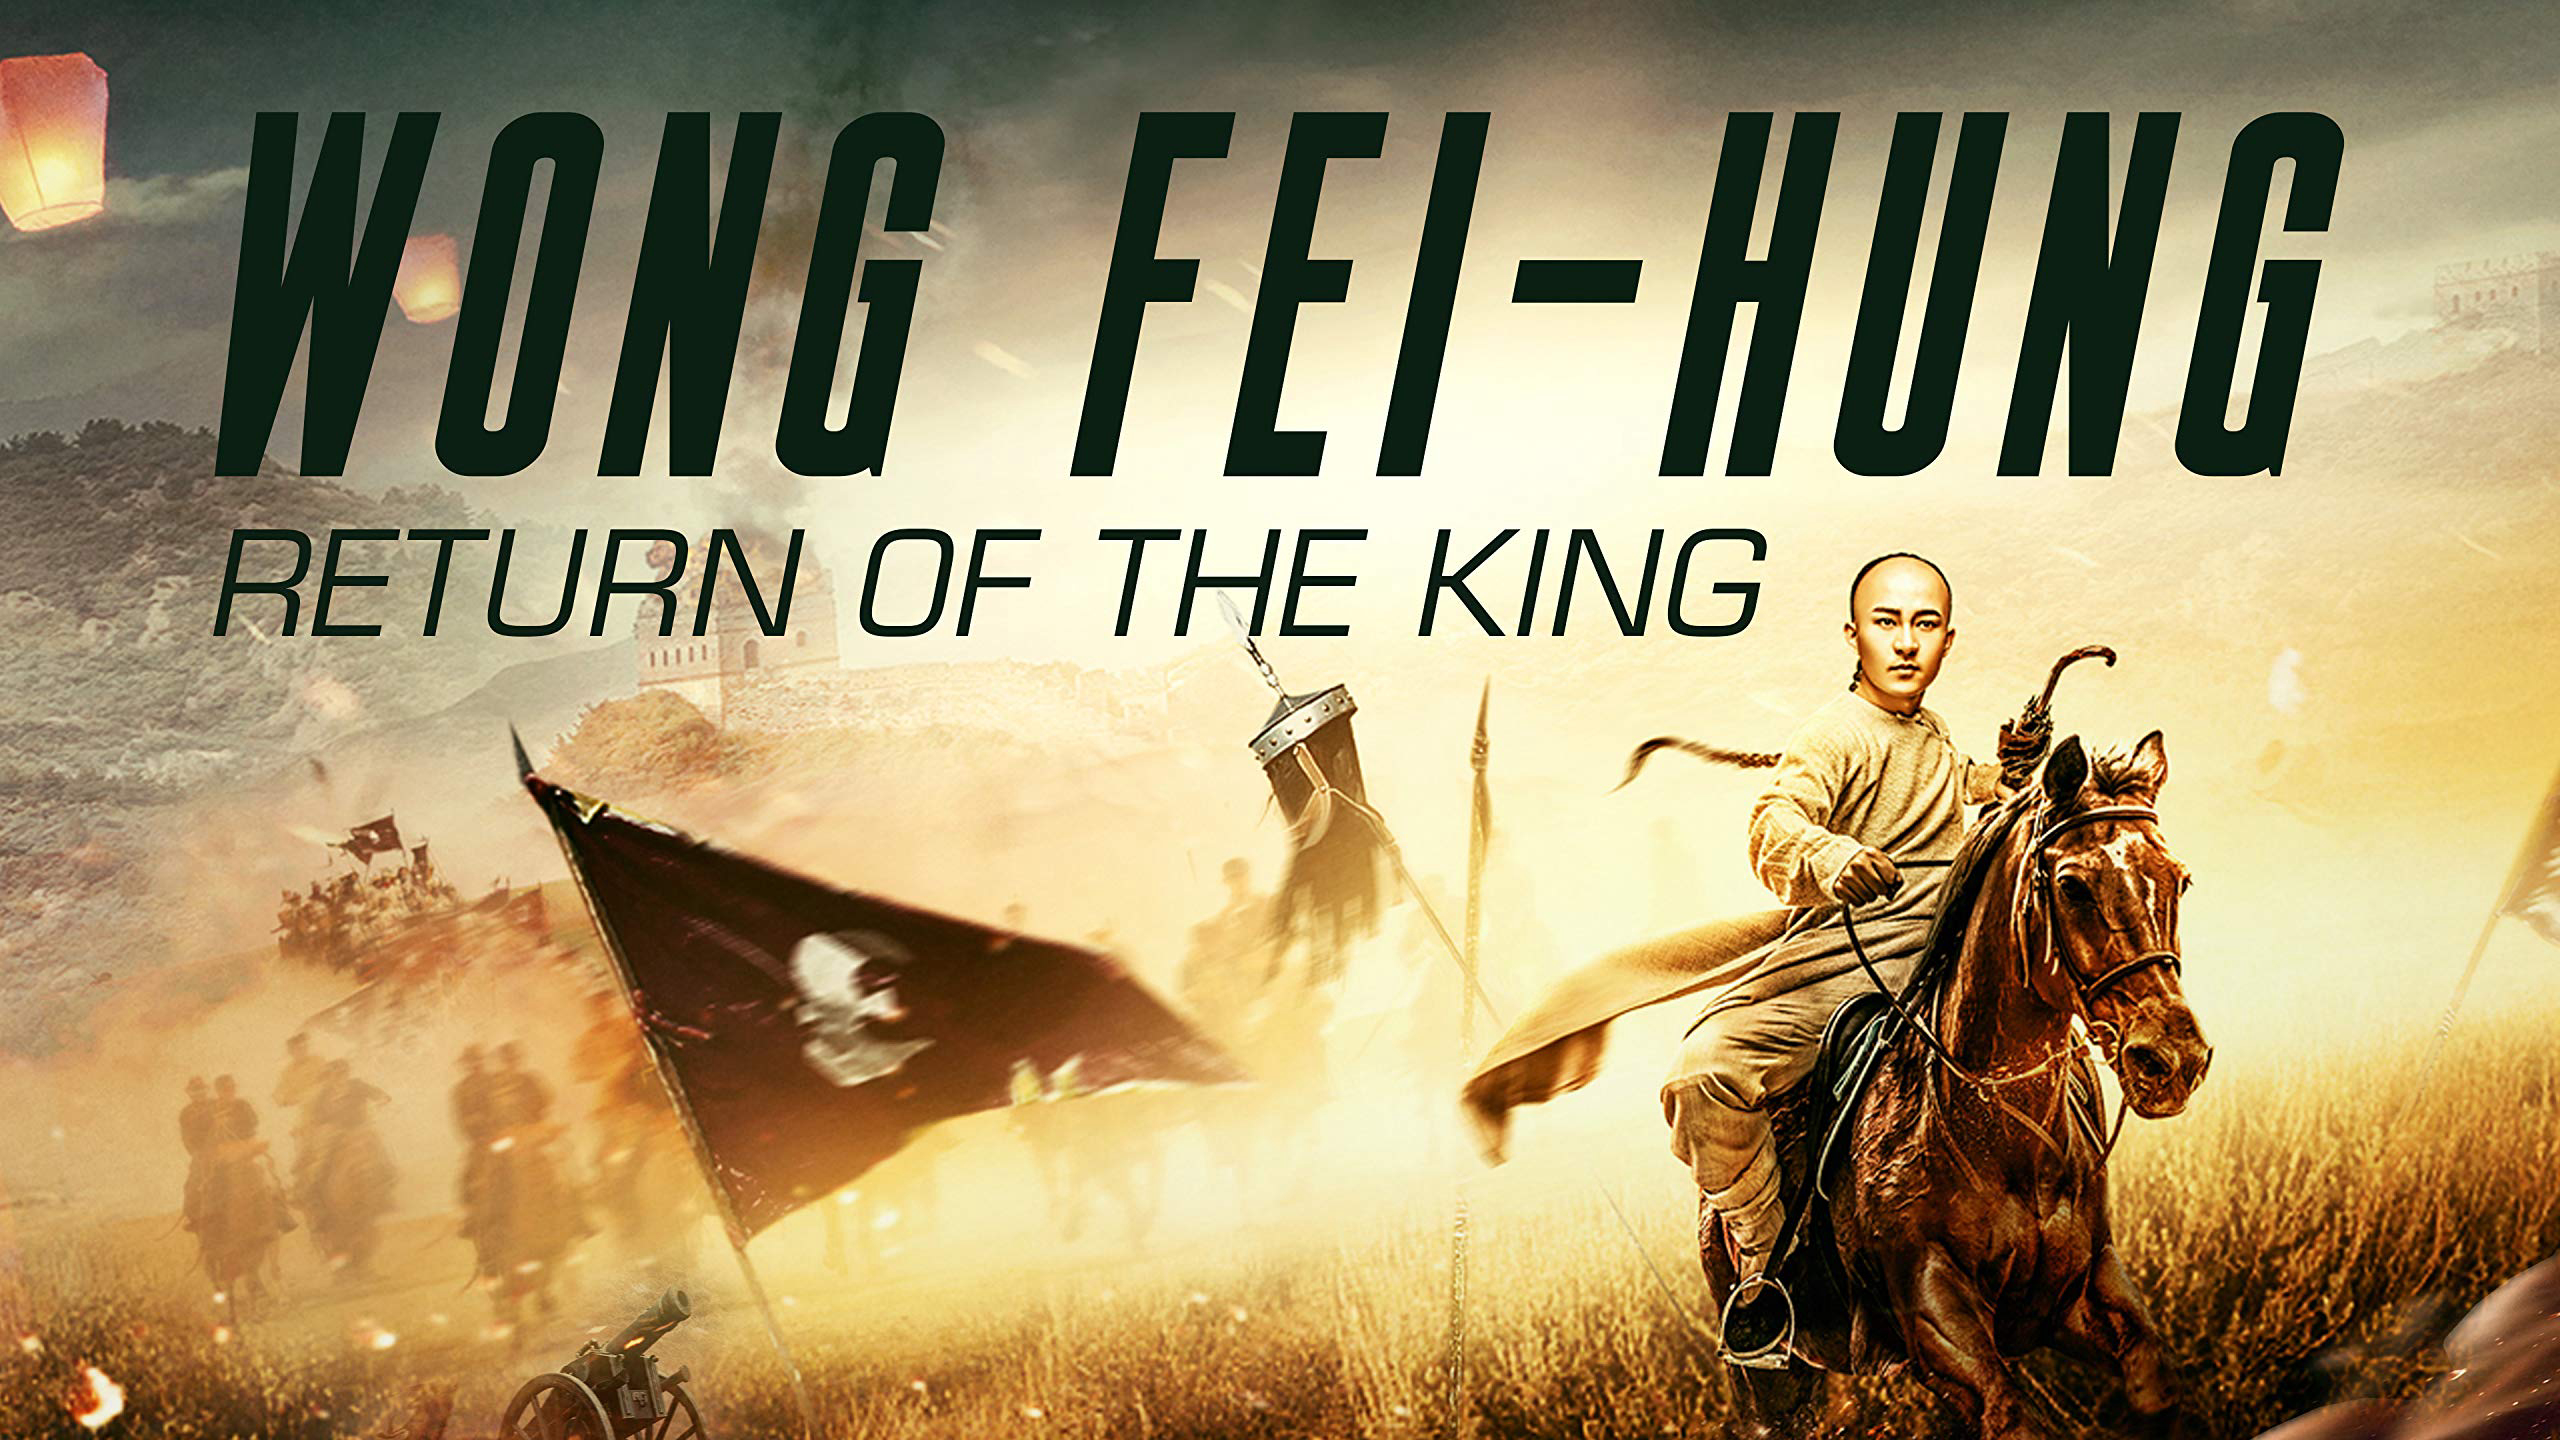 Wong Fei Hung: Return of the King / Wong Fei Hung: Return of the King (2017)